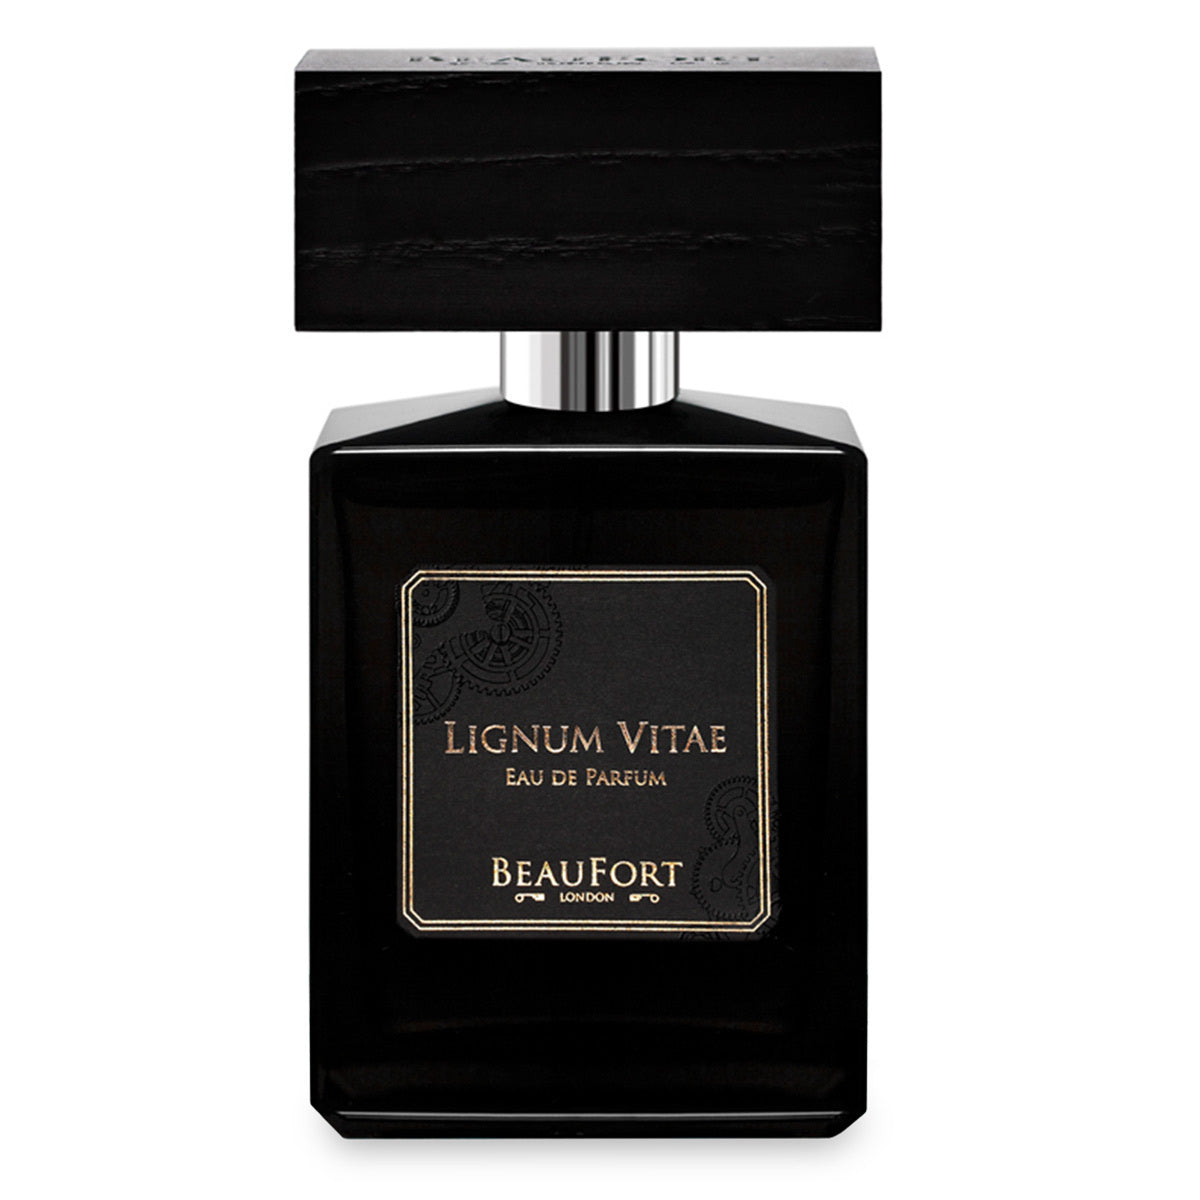 Primary image of Lignum Vitae Eau de Parfum